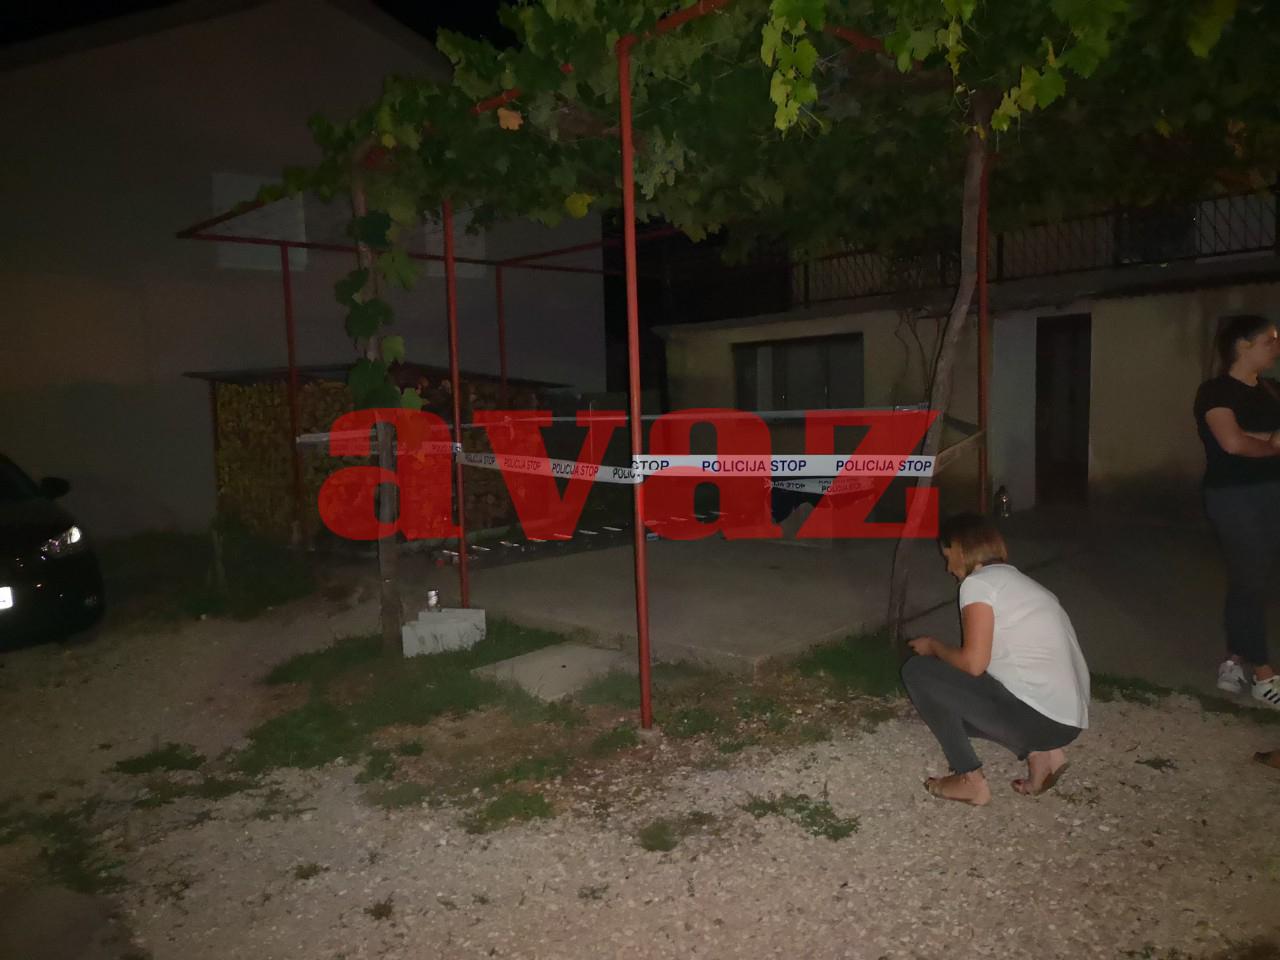 "Avaz" u selu Cigići: Sablasna tišina i tuga nakon smrti brata i sestre